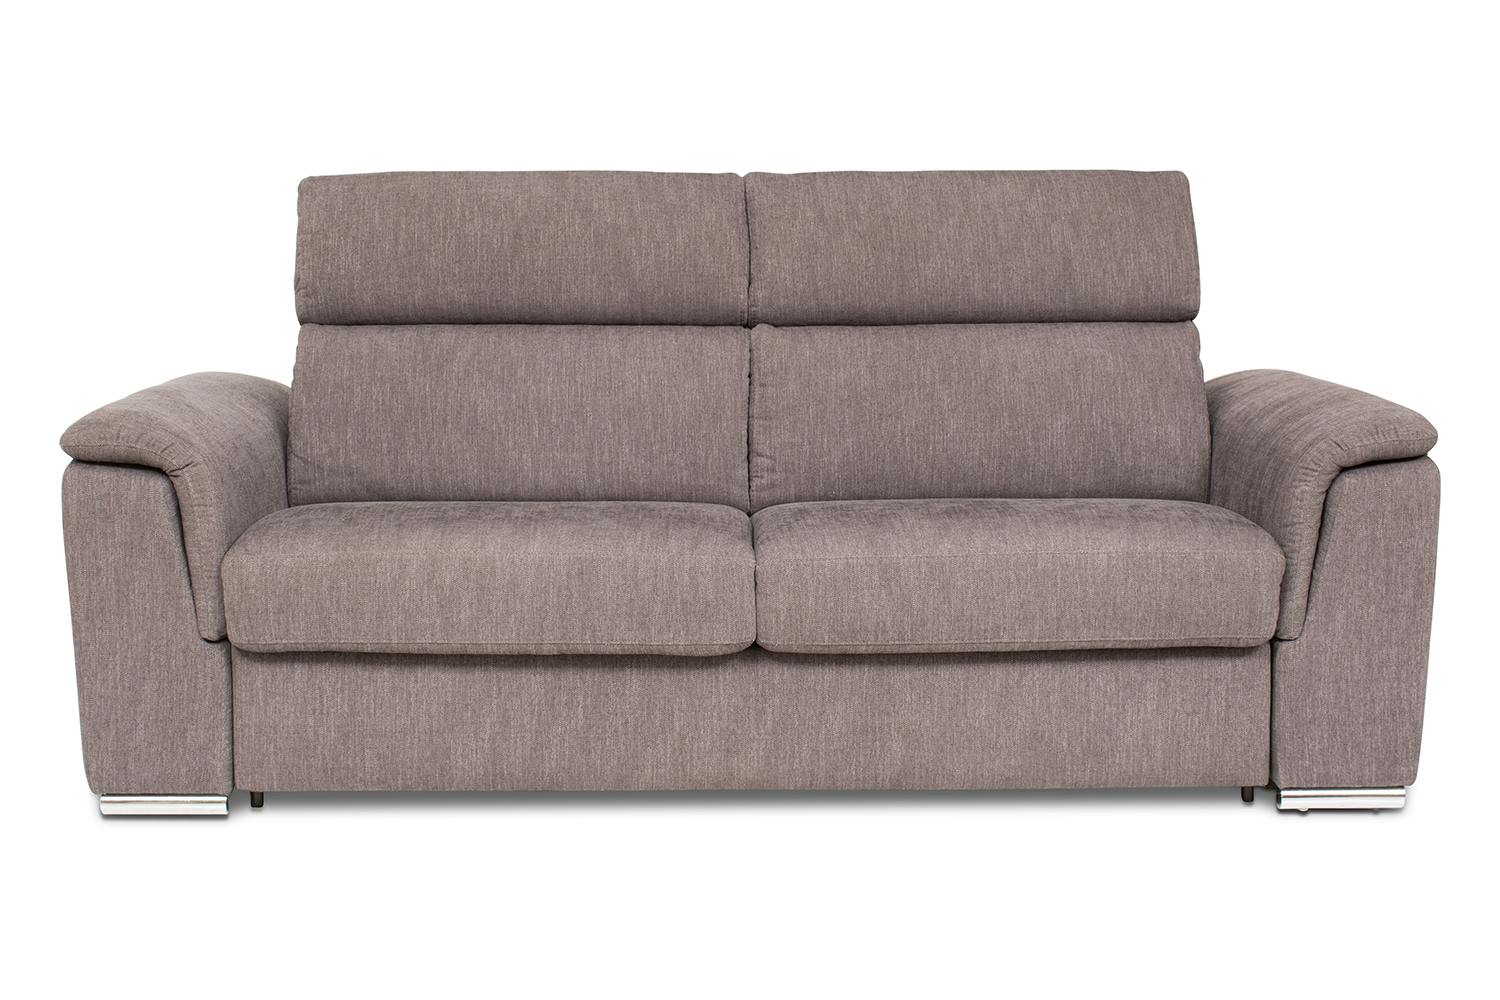 sofa beds online ireland